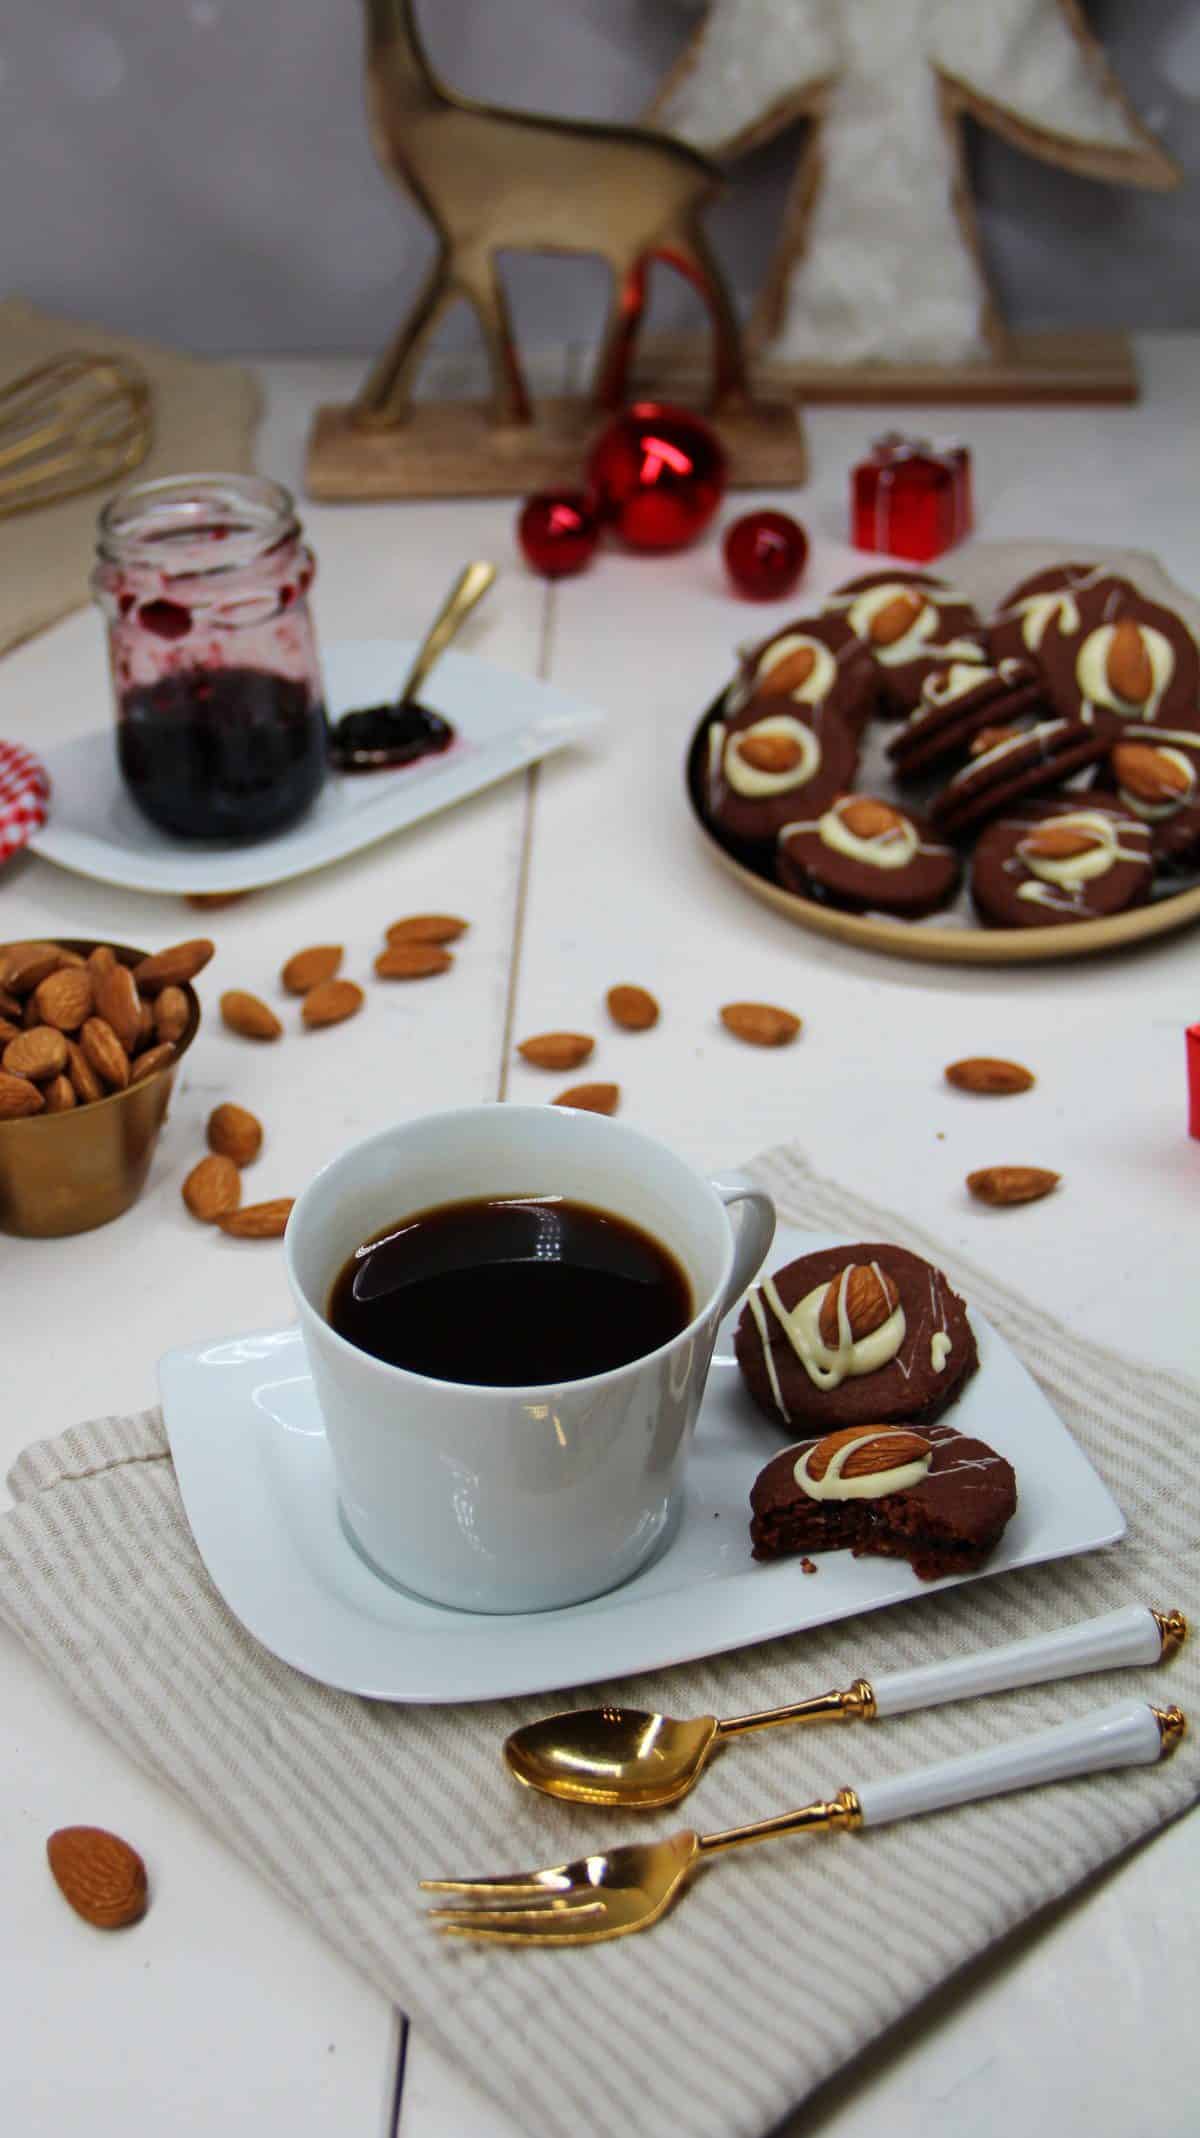 Schoko-Plätzchen mit Mandeln auf einem weißen Teller neben einem Kaffee